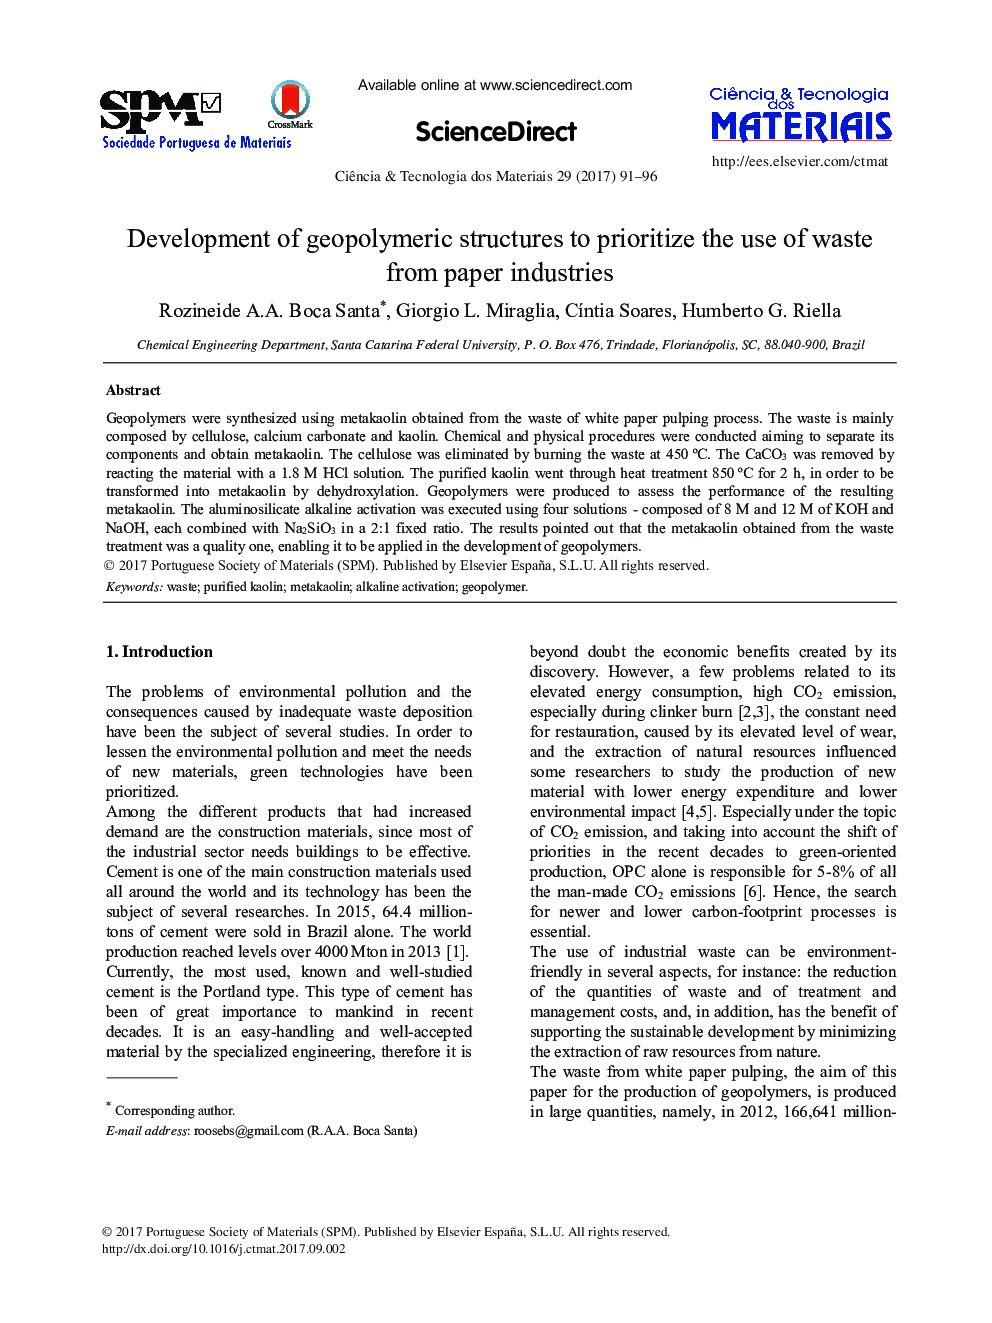 توسعه ساختارهای ژئوپلیمر برای تعیین اولویت استفاده از ضایعات از صنایع کاغذ 